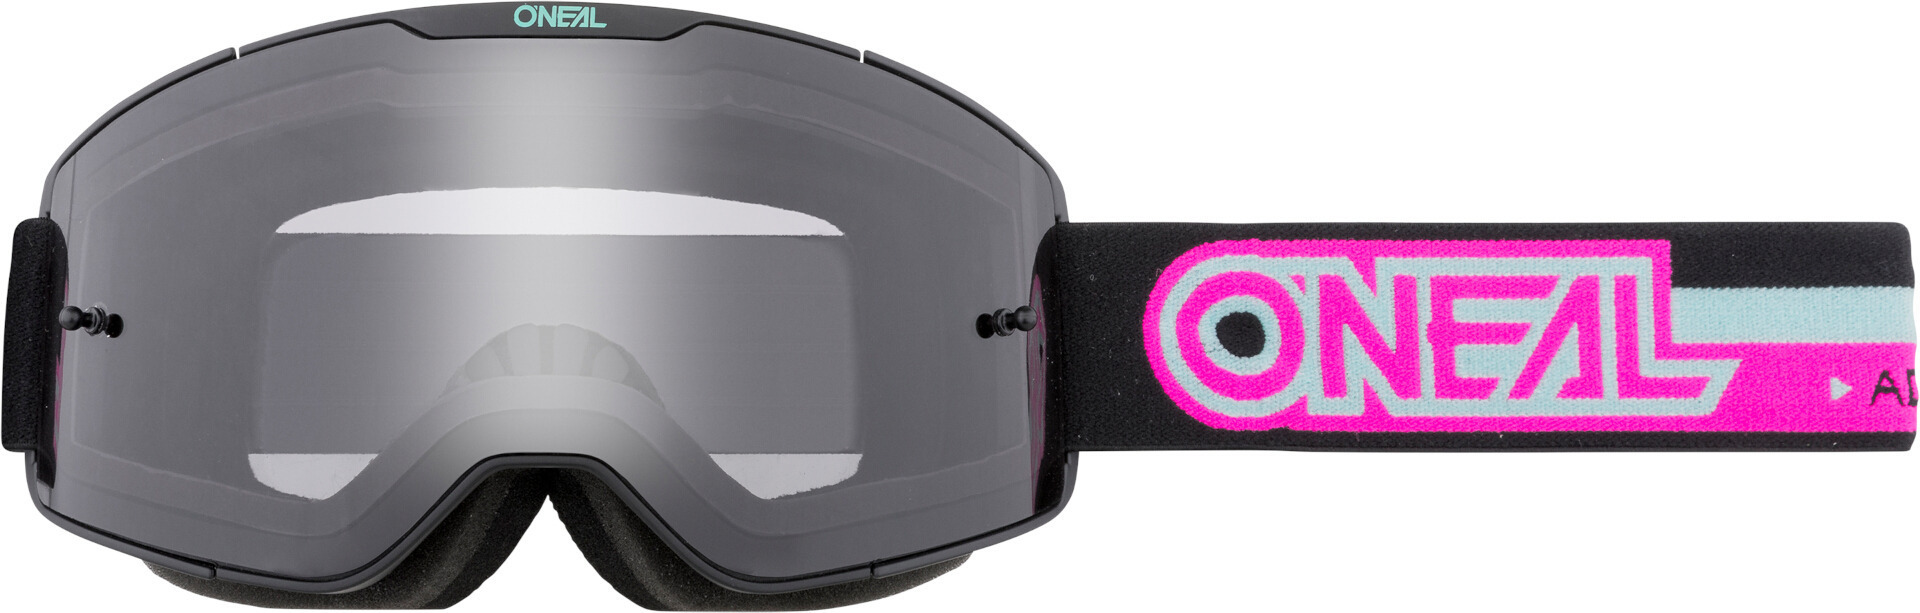 Oneal B-20 Proxy Motocross Brille - Getönt, schwarz-pink, schwarz-pink